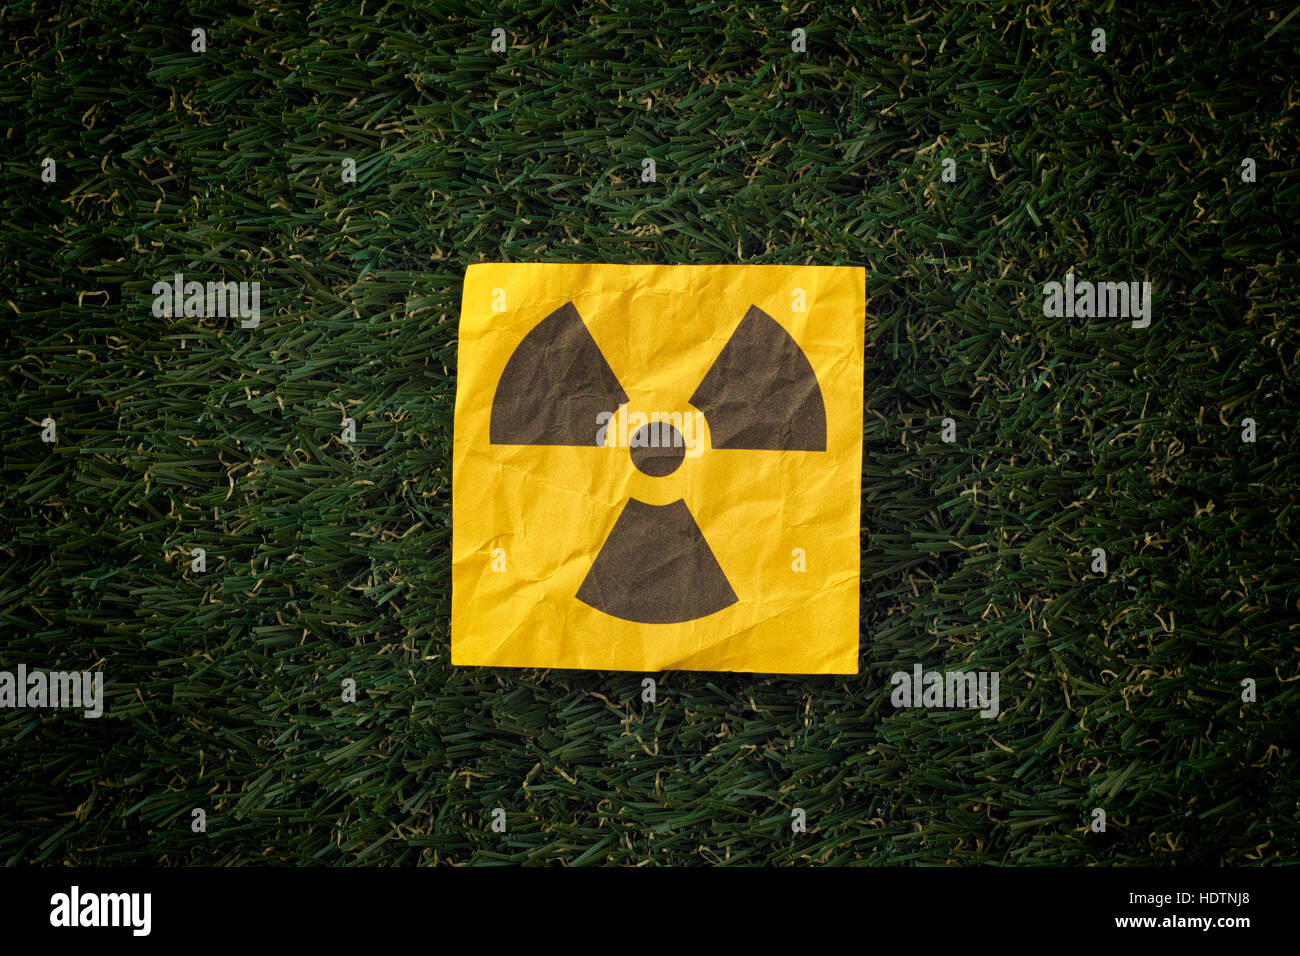 Strahlung-Warnschild auf dem grünen Rasen. Hautnah. Stockfoto